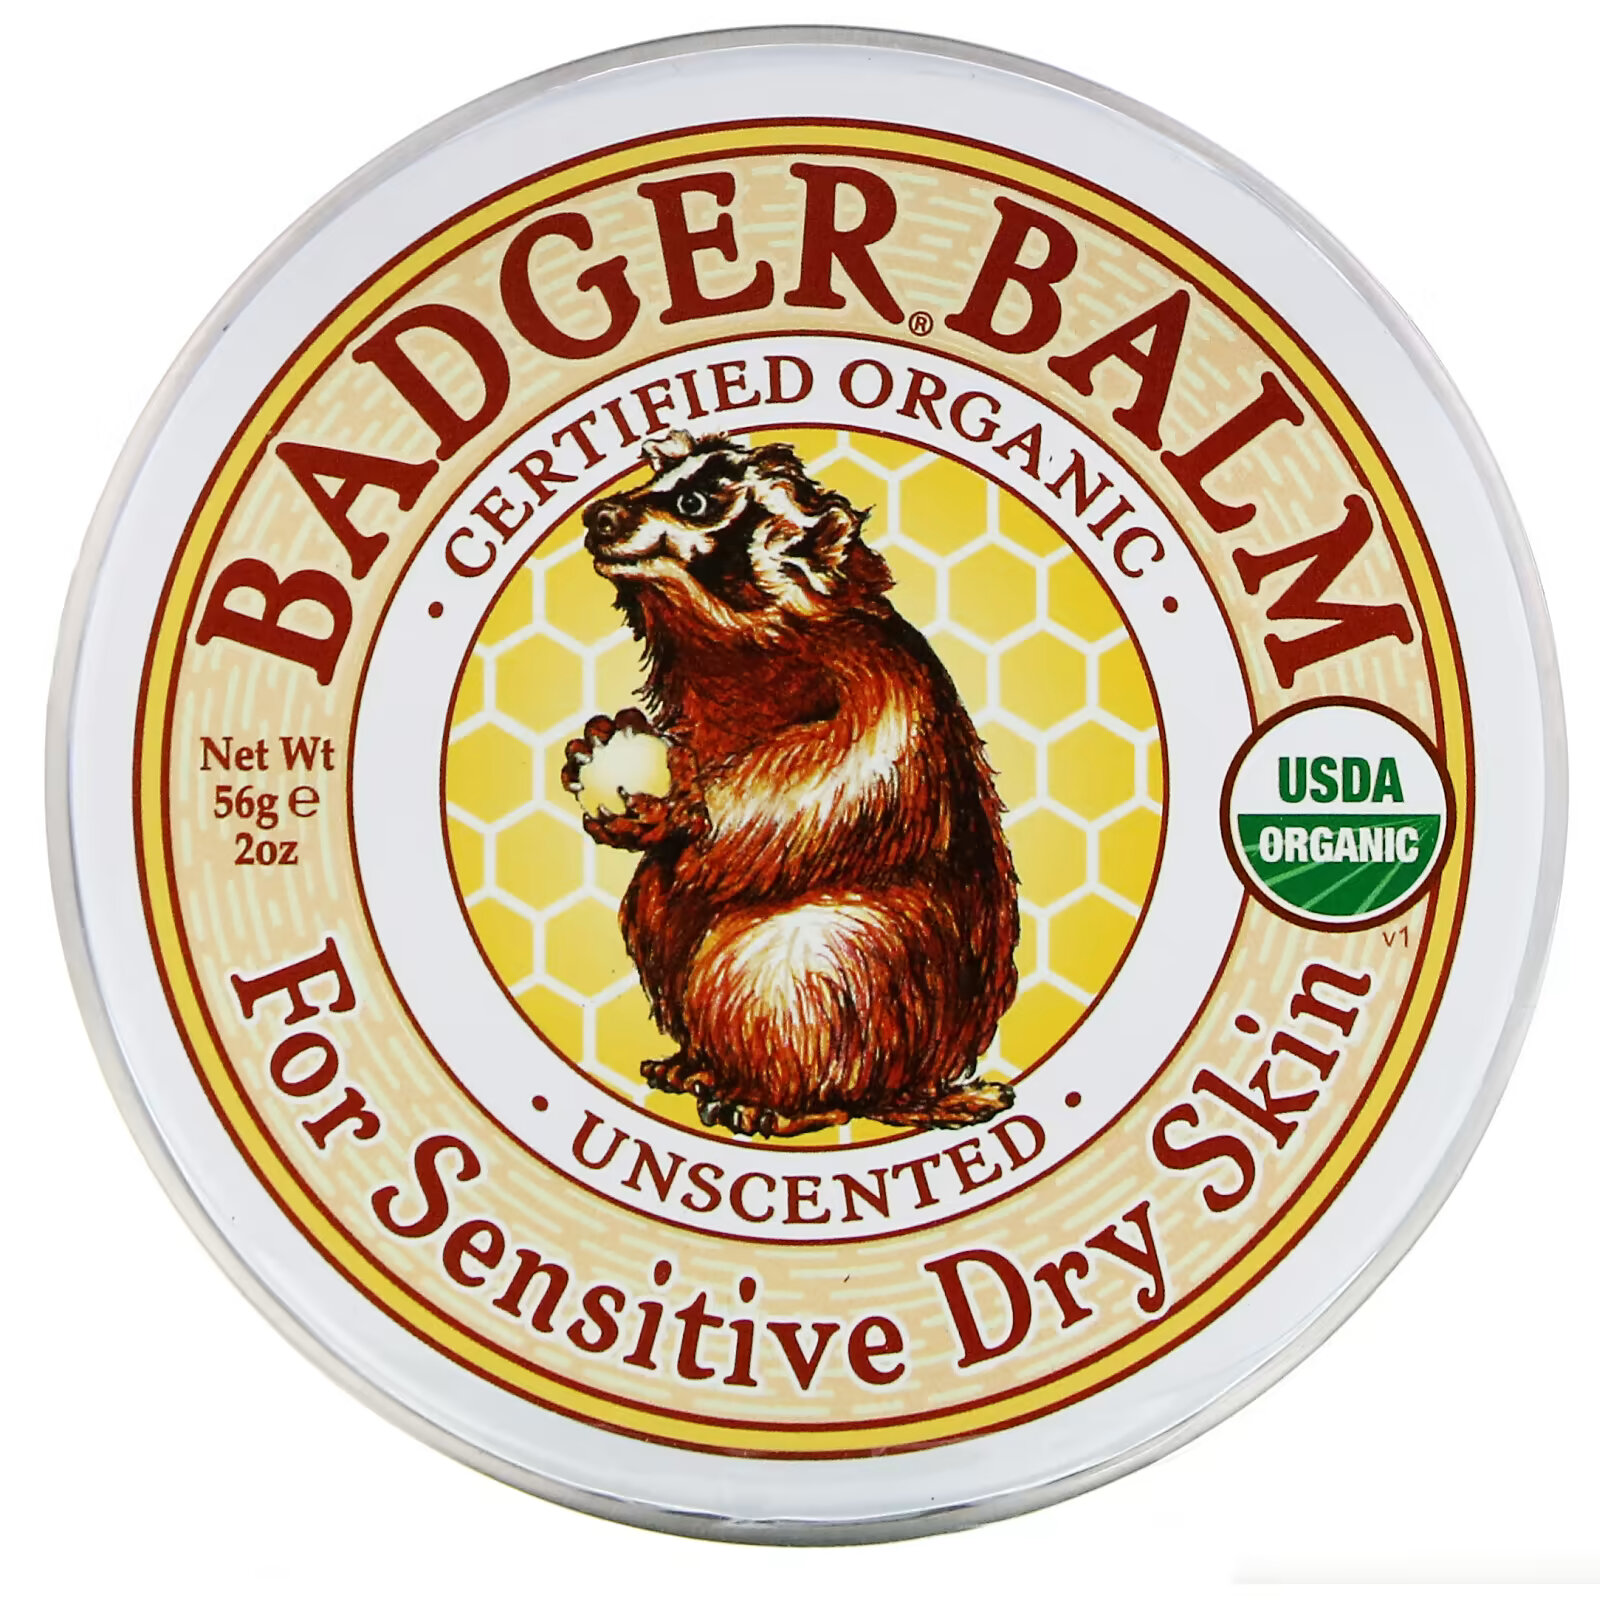 Badger Company, Бальзам Badger, для сухой и чувствительной кожи, без запаха, 56 г badger company бальзам badger для сухой и чувствительной кожи без запаха 56 г